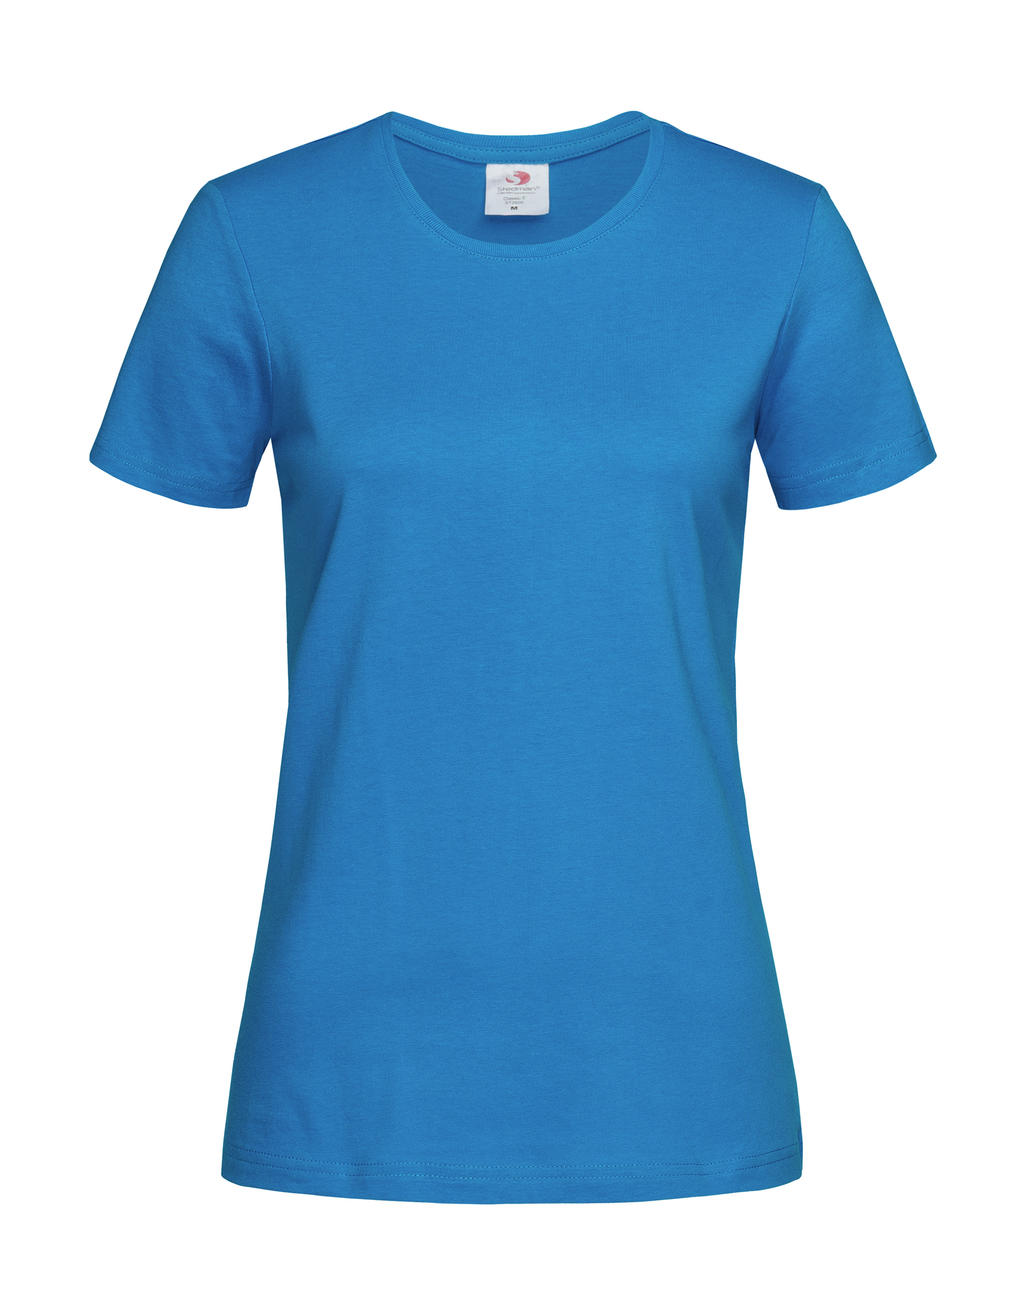 Tričko dámské Stedman Fitted s kulatým výstřihem - ocean blue, XS